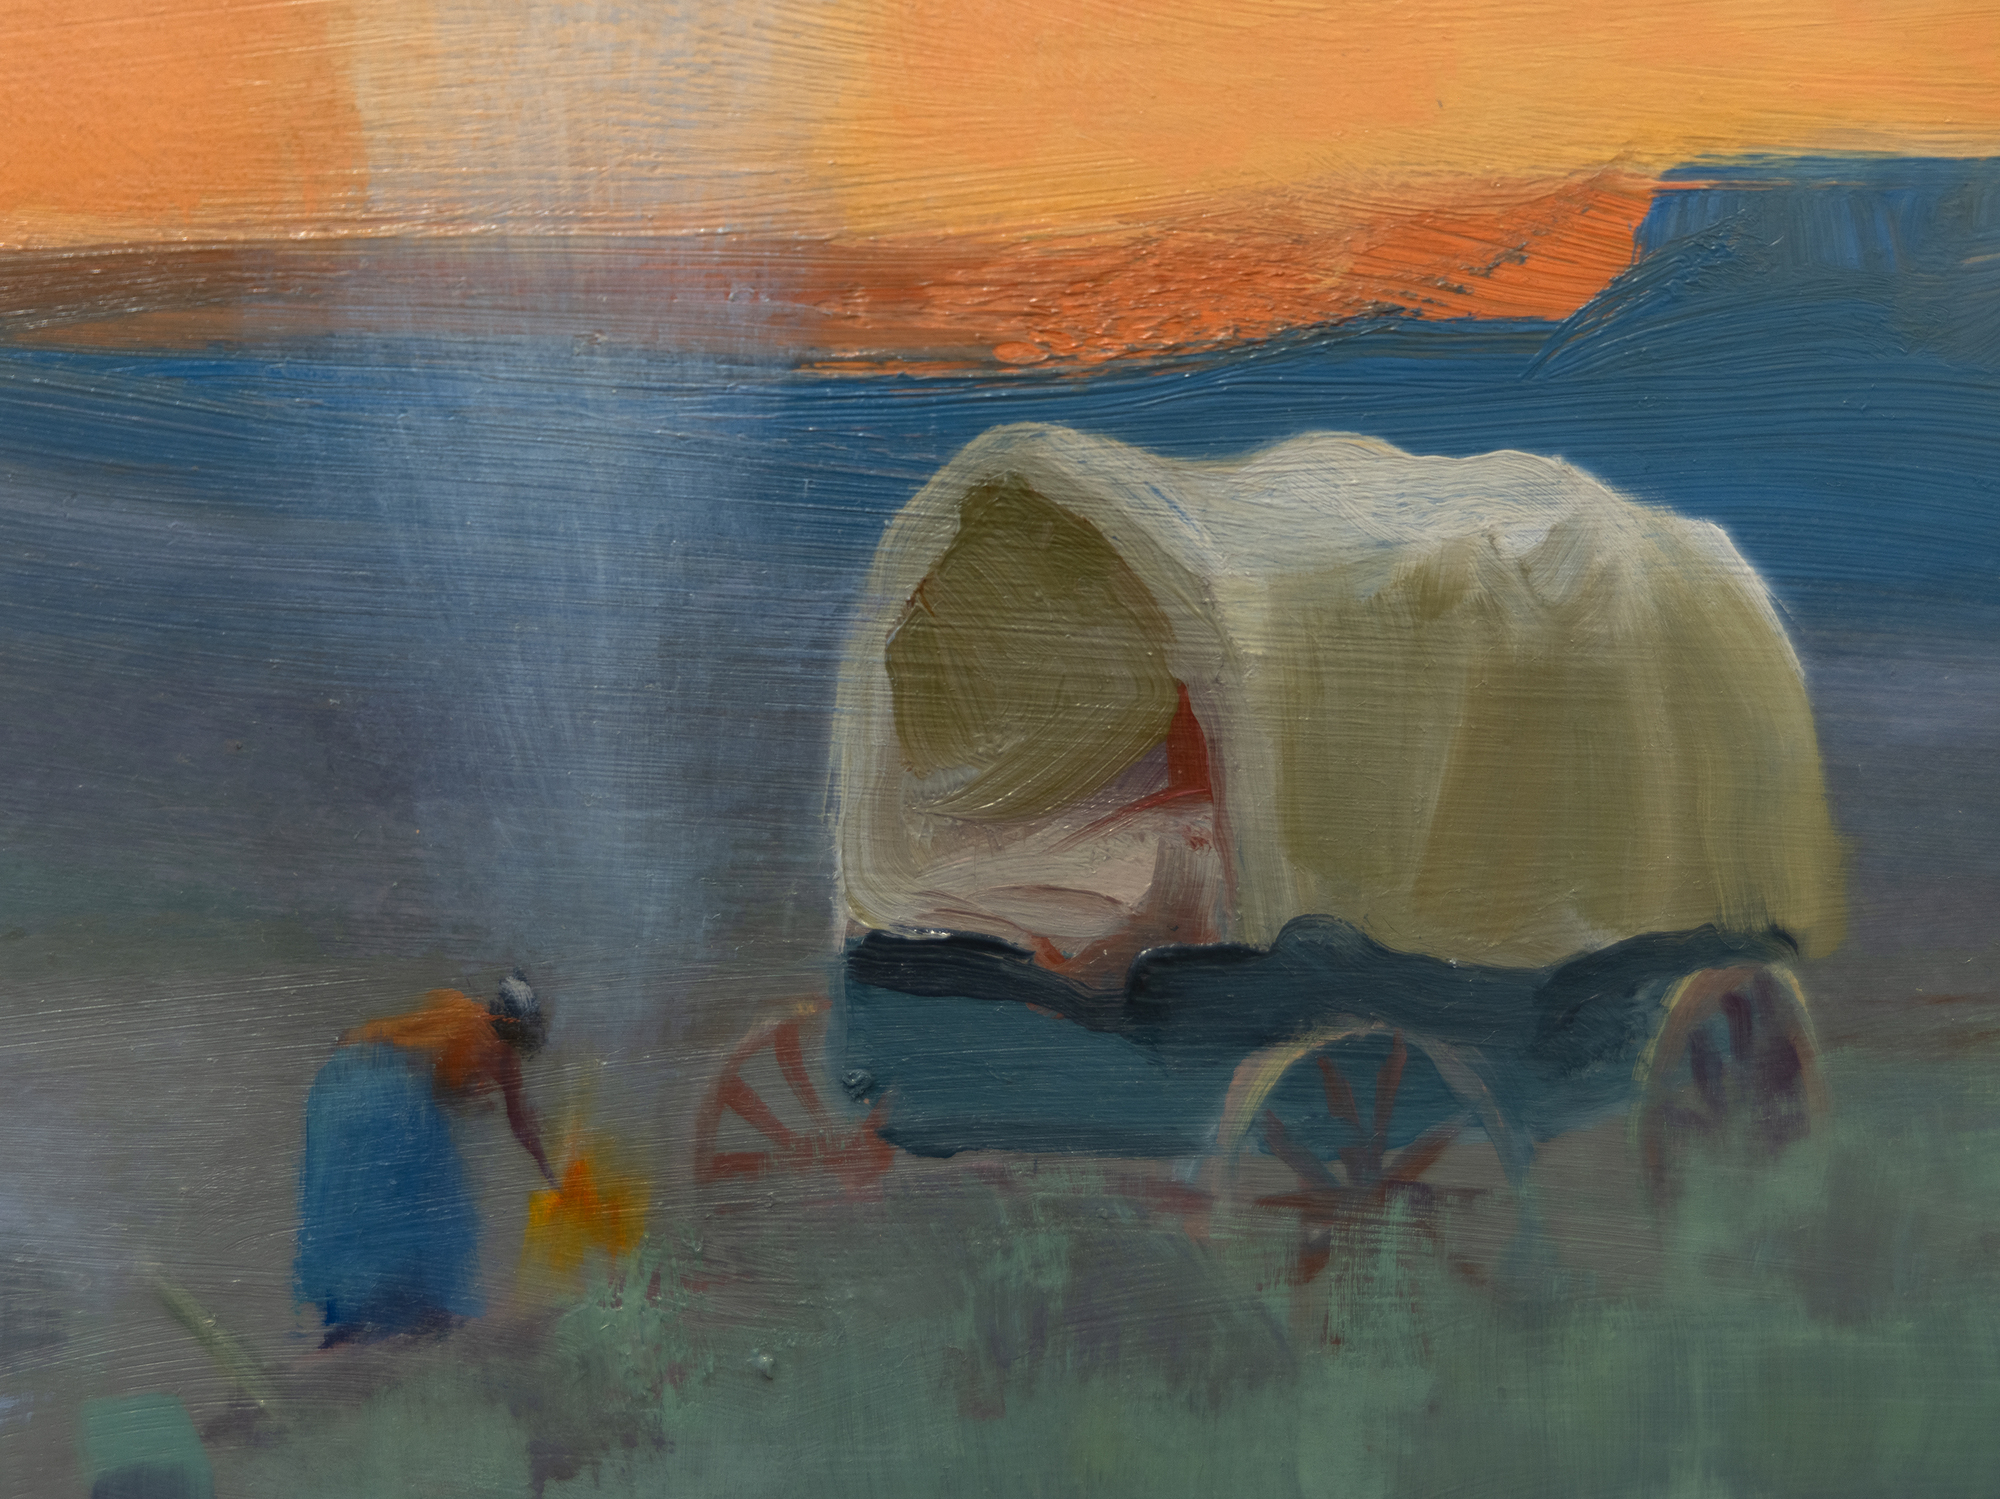 Gerald Curtis Delano ist bekannt für seinen unverwechselbaren Malstil, den er &quot;designten Realismus&quot; nannte. Seine Ausbildung bei N. C. Wyeth ermöglichte es ihm, eine Reihe von illustrativen bis expressiven Ansätzen zu verwenden, immer mit sorgfältiger und tadelloser Gestaltung. Die Gemälde wie das Navajo Camp sind bekannt für ihre sanften, modulierten Farben, die klaren und anmutigen Kompositionen und die Einfachheit der Formen, die jedes Thema auf seine wesentliche Natur reduzieren. Sie zeigen Delanos scharfes Auge, sein Verständnis und seine Fähigkeit, die Farben und die Noblesse des Lebensstils der Navajos einzufangen. Wie in den meisten seiner Werke nimmt der Himmel einen großen Teil der Leinwand ein, und die Figuren verleihen der Szene einen gewissen Maßstab. Diese Elemente wirken zusammen, um ein Gefühl von Weite und Gelassenheit zu vermitteln.